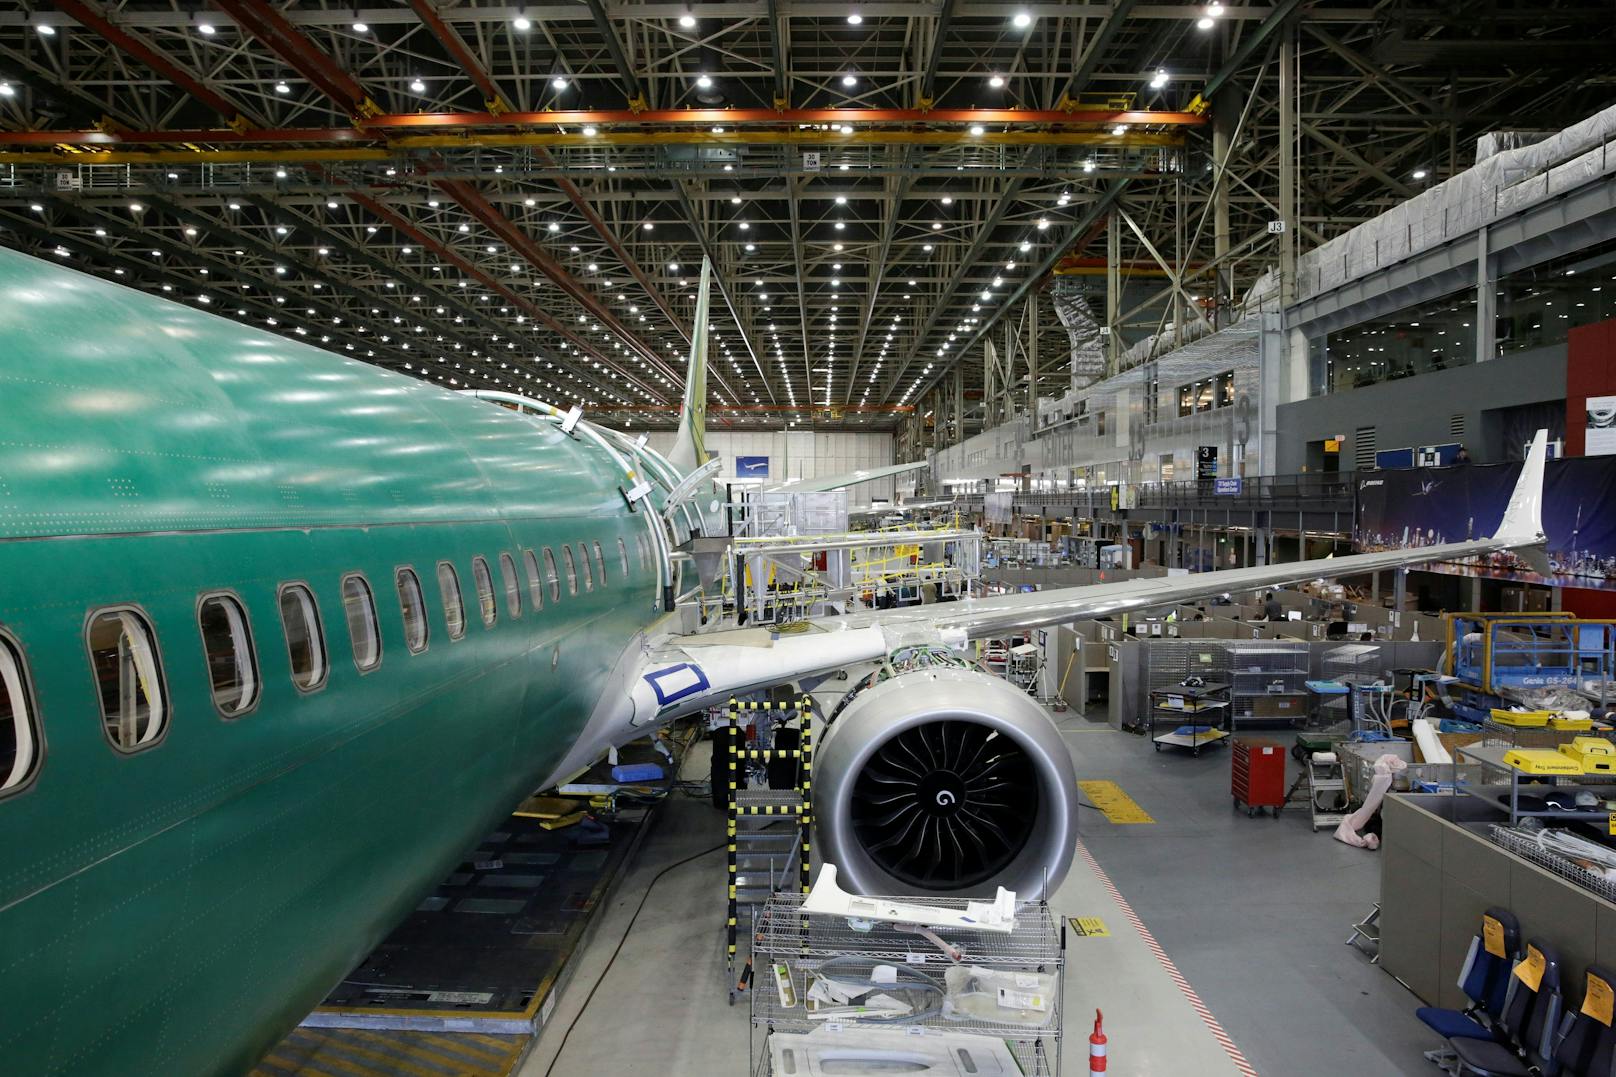 Wieder Mängel bei Boeing-Flugzeug aufgetaucht